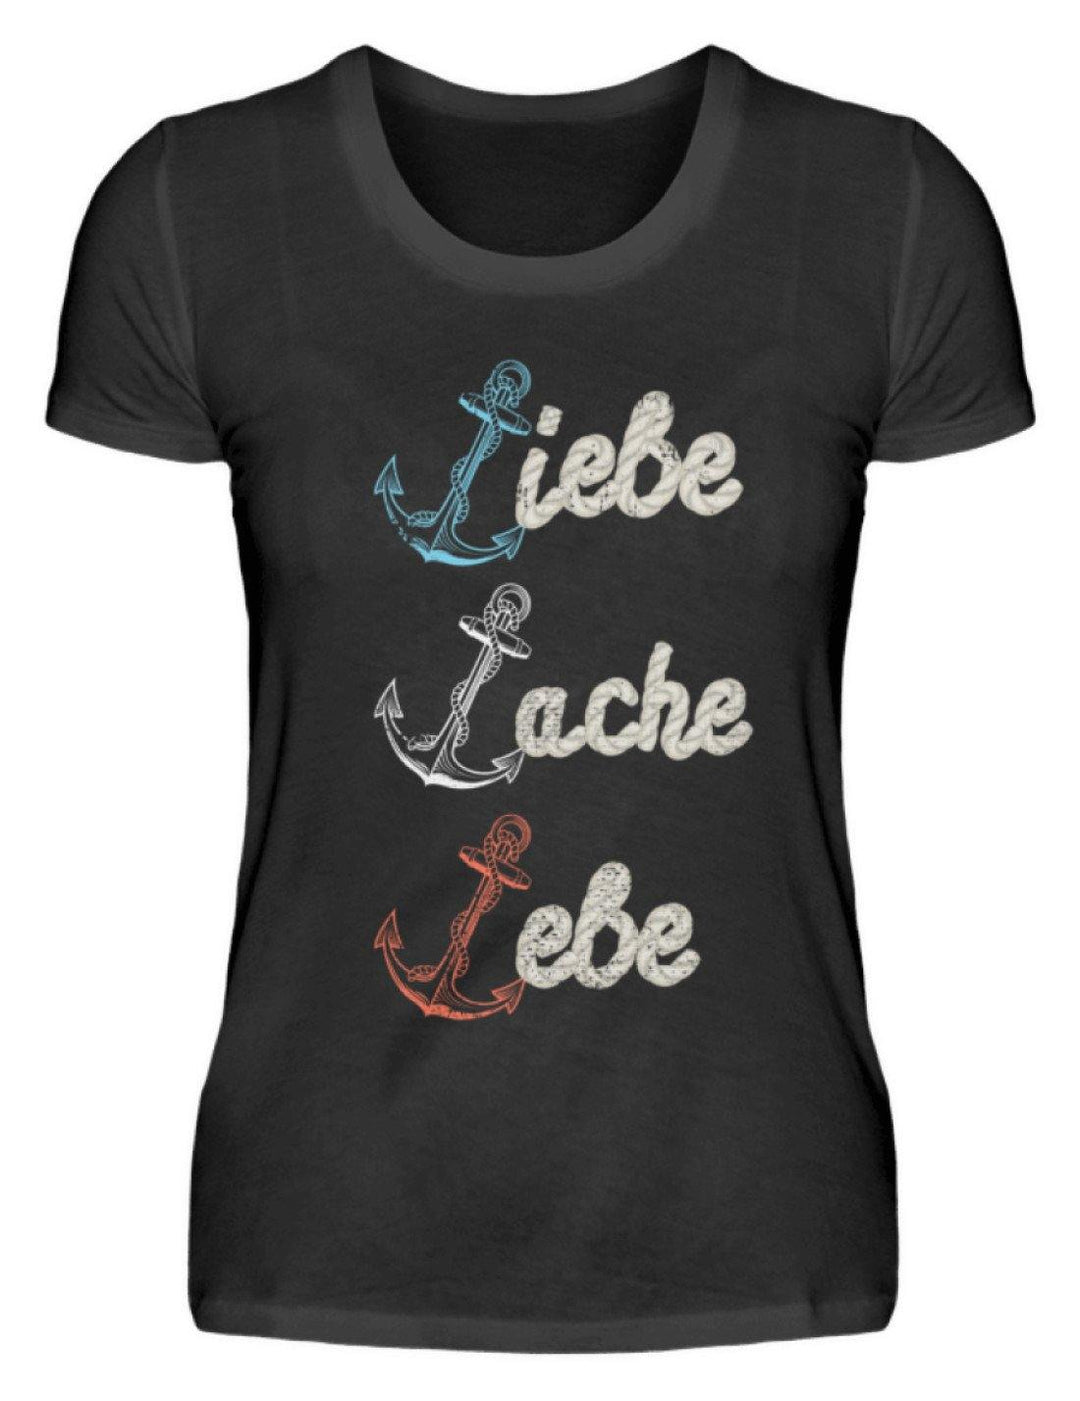 Liebe Lache Lebe - Norddeutsch   - Damenshirt - Words on Shirts Sag es mit dem Mittelfinger Shirts Hoodies Sweatshirt Taschen Gymsack Spruch Sprüche Statement